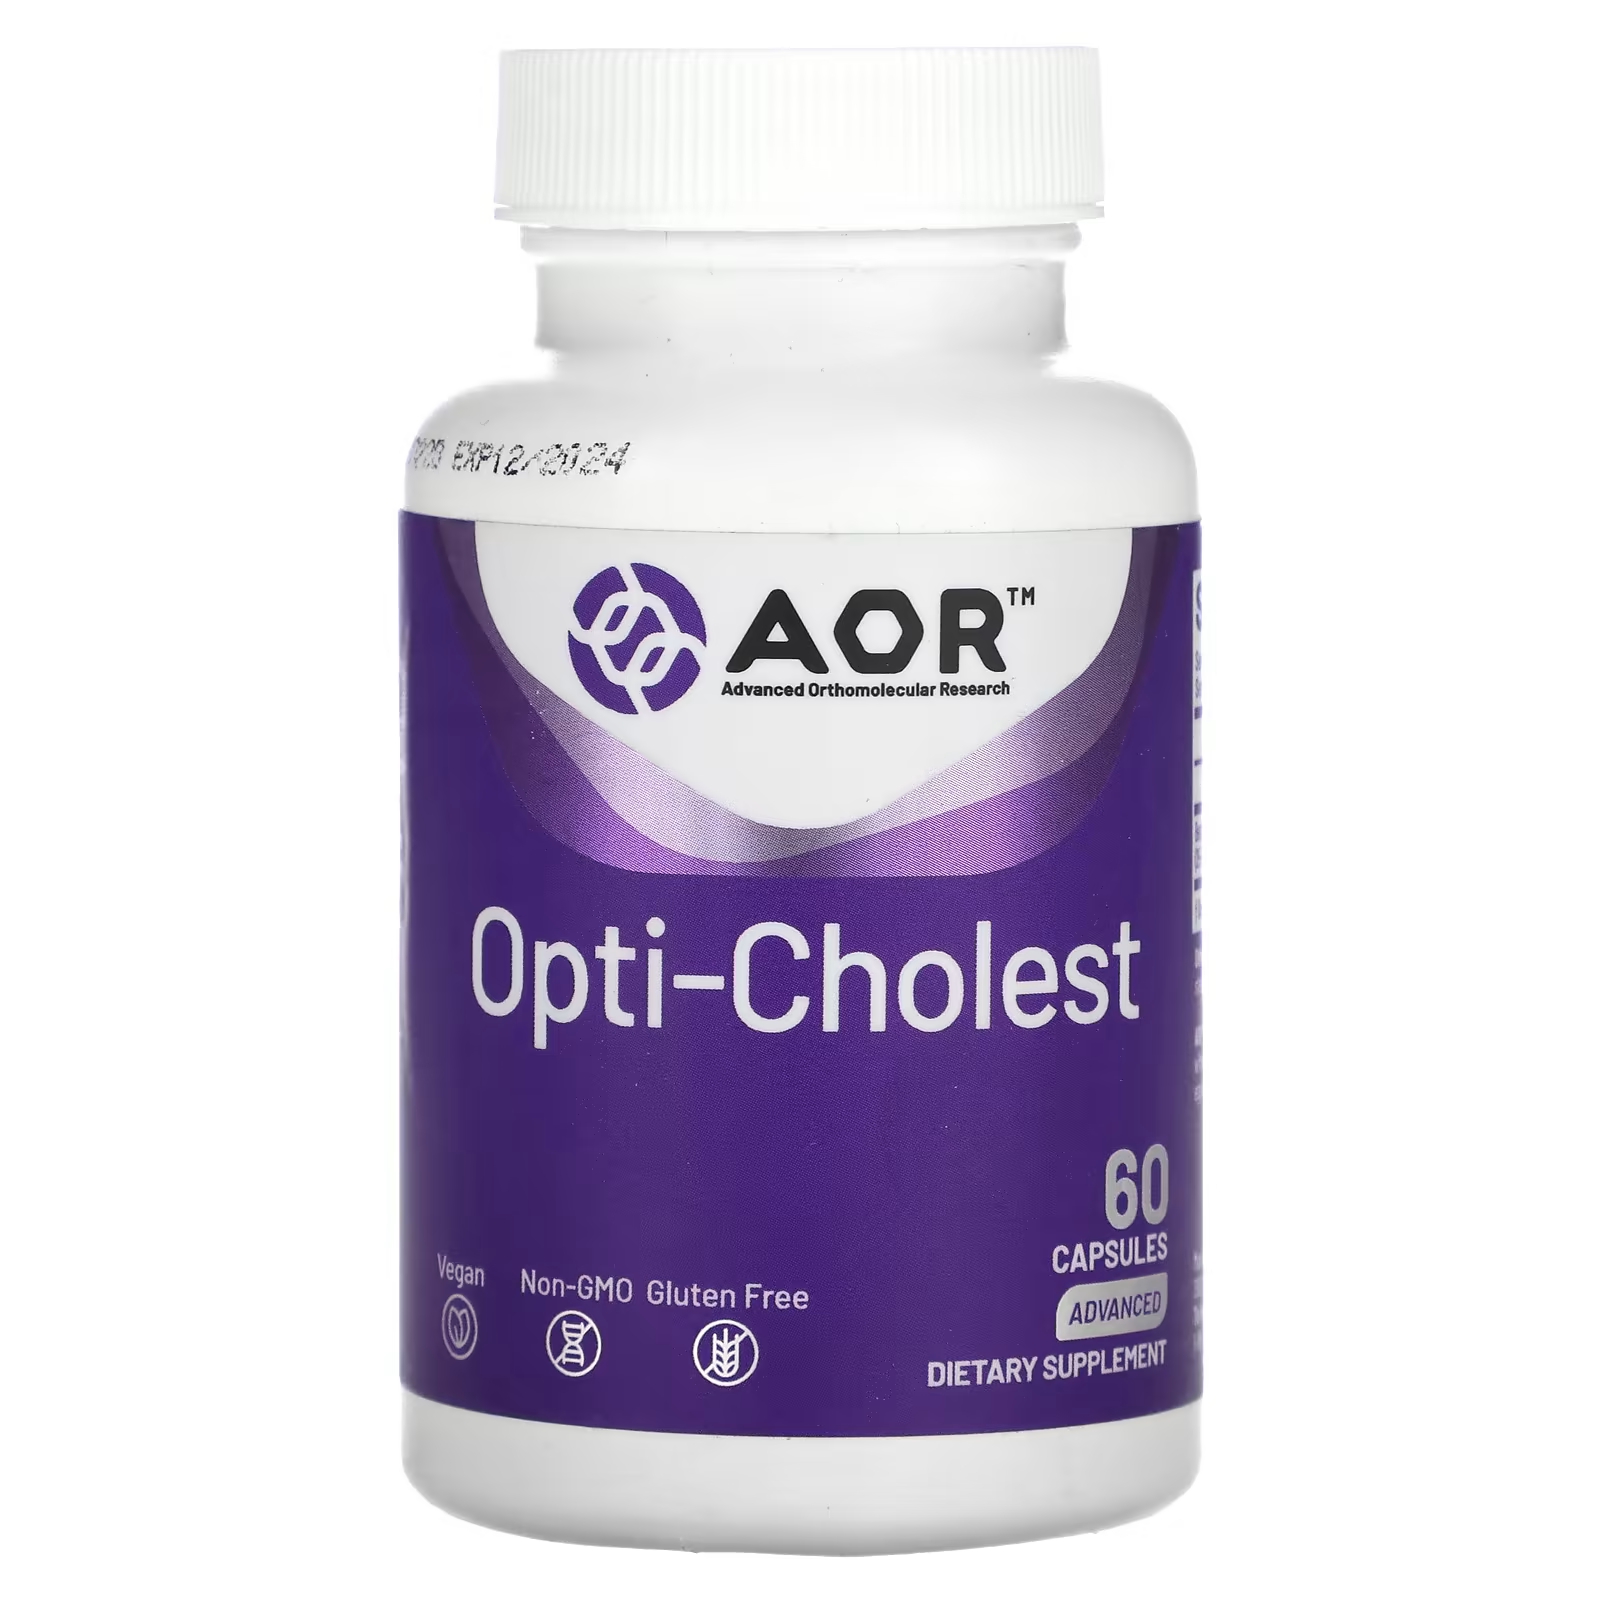 Передовые ортомолекулярные исследования AOR Opti-Cholest 60 капсул Advanced Orthomolecular Research AOR цена и фото